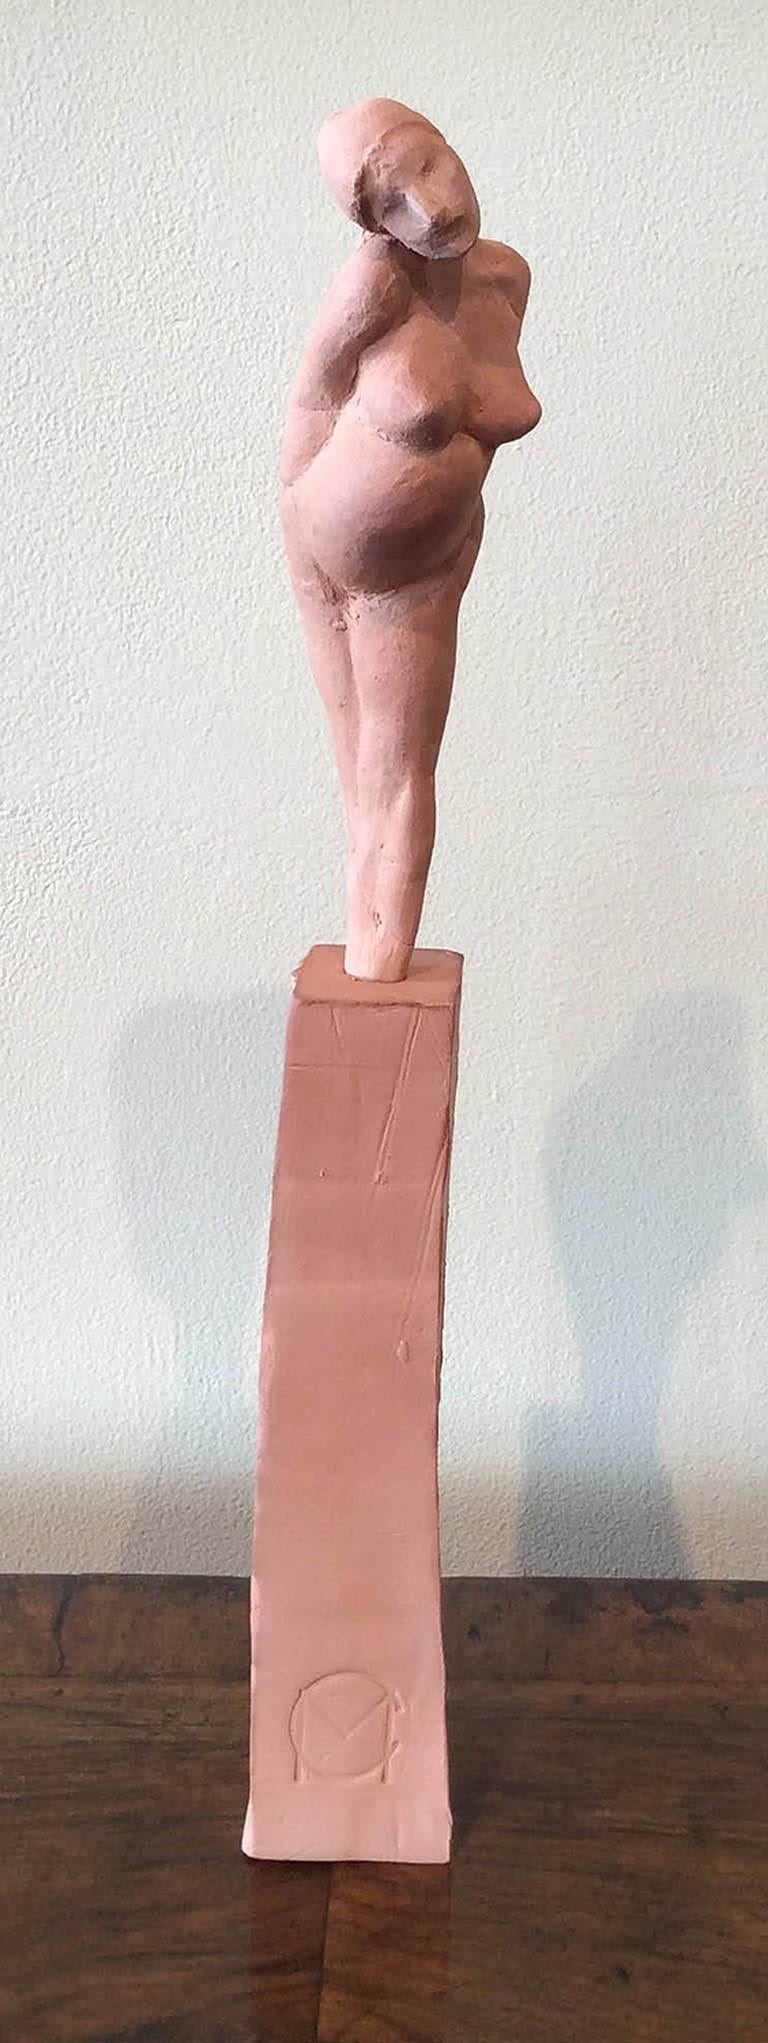 Christian Mizon Nude Sculpture - Female Figure